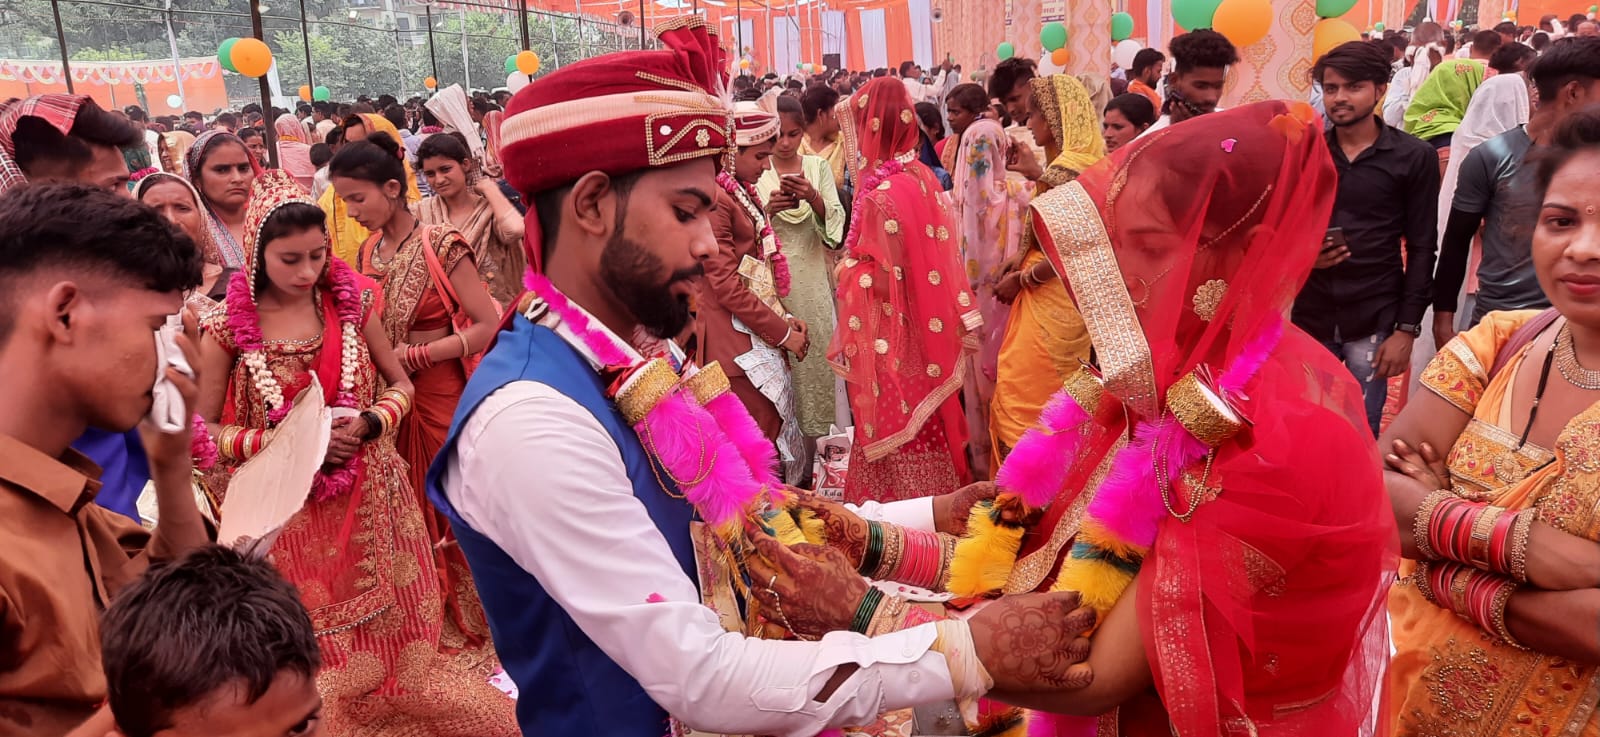 बरेली में मुख्यमंत्री सामूहिक विवाह समारोह का आयोजन, 202 जोड़ों ने लिए सात फेरे, 21 ने पढ़ा निकाह